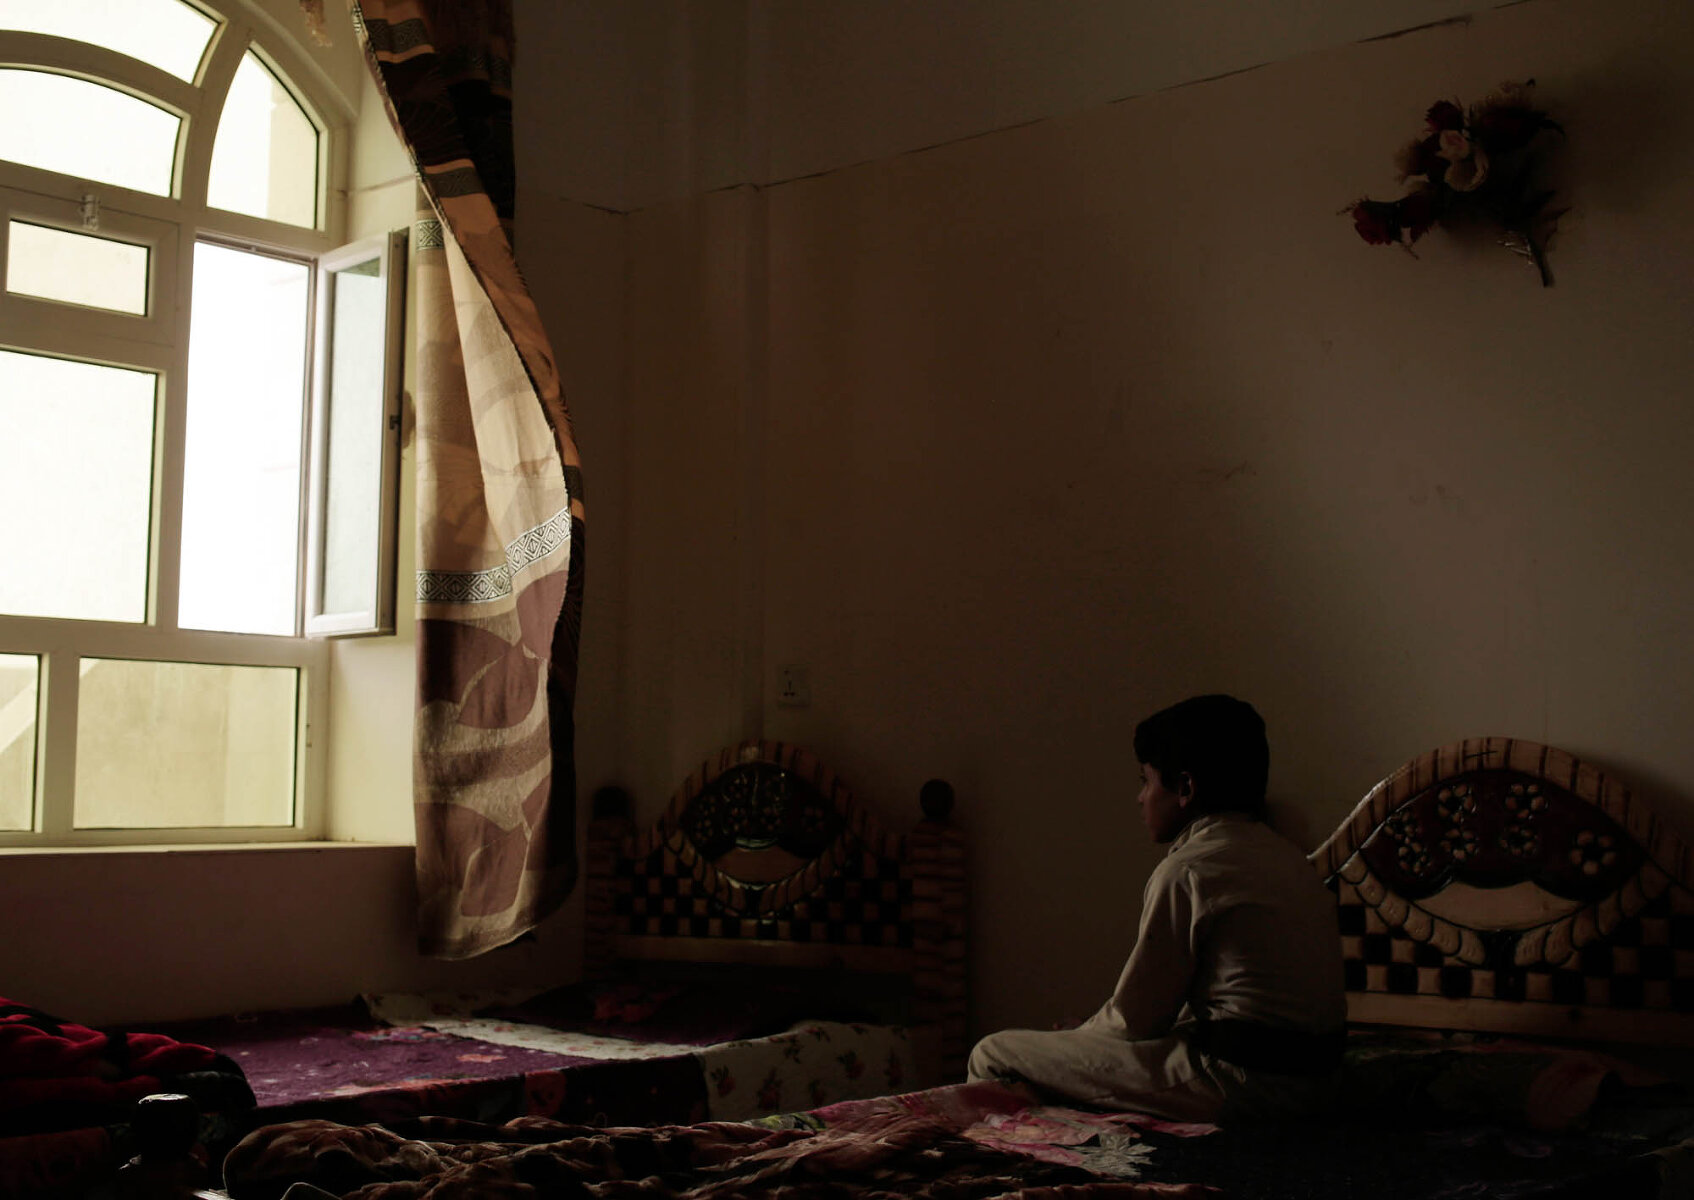 <p>Мальчик сидит на кровати&nbsp;в реабилитационном центре для детей-комбатантов в Марибе. Повстанцы-хуситы заставляли детей участвовать в гражданской войне в Йемене, обучая их убивать и умирать в &laquo;священной войне&raquo;</p>